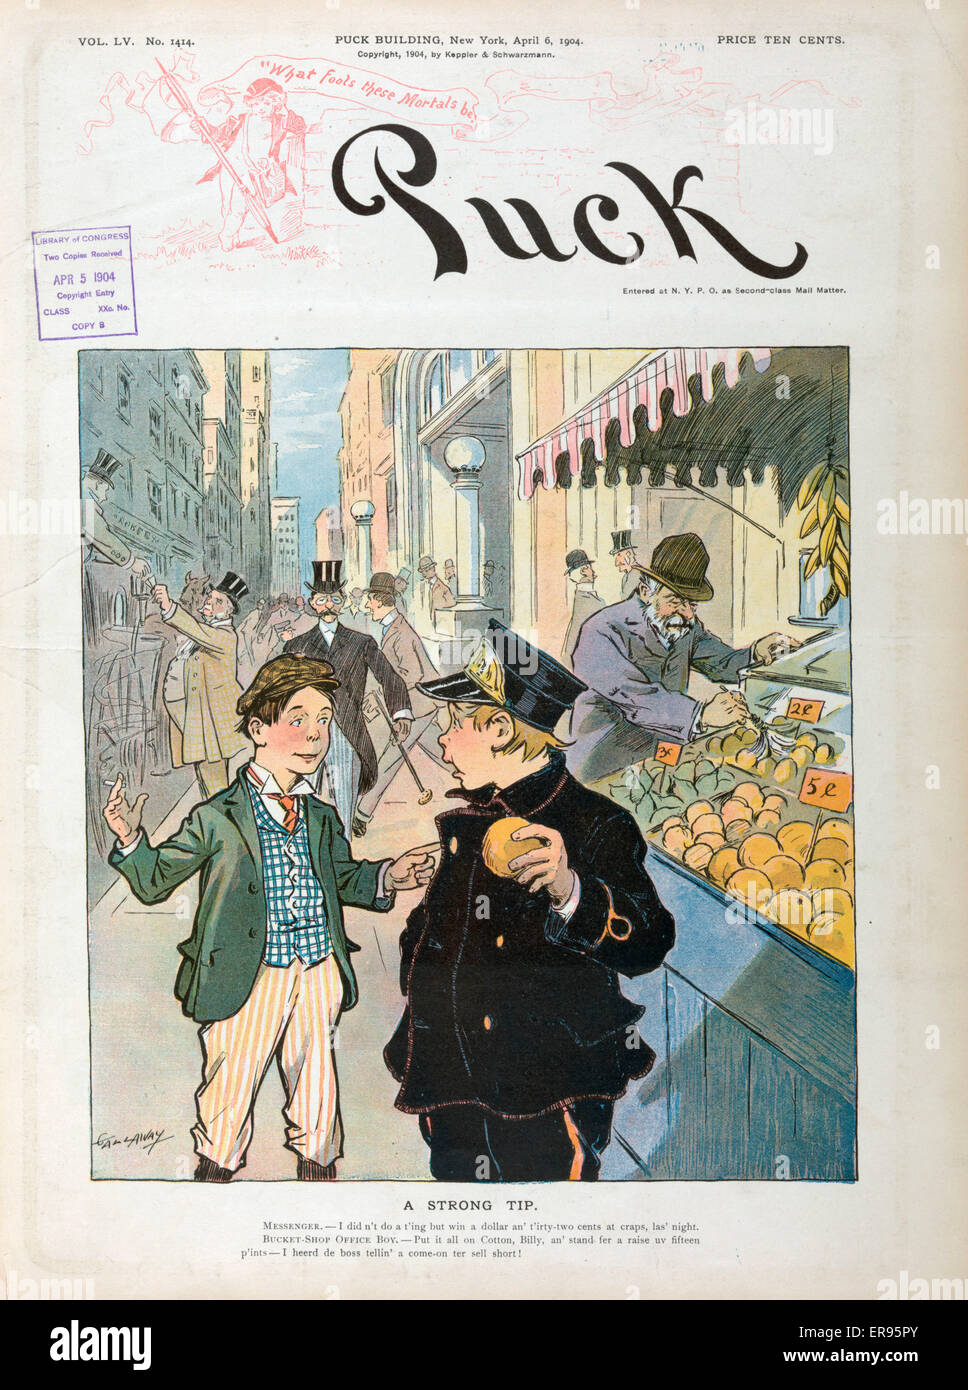 Una punta forte. La figura mostra due ragazzi parlando in una città frenetica marciapiede accanto a una produzione di stand. Data 1904 aprile 6. Foto Stock